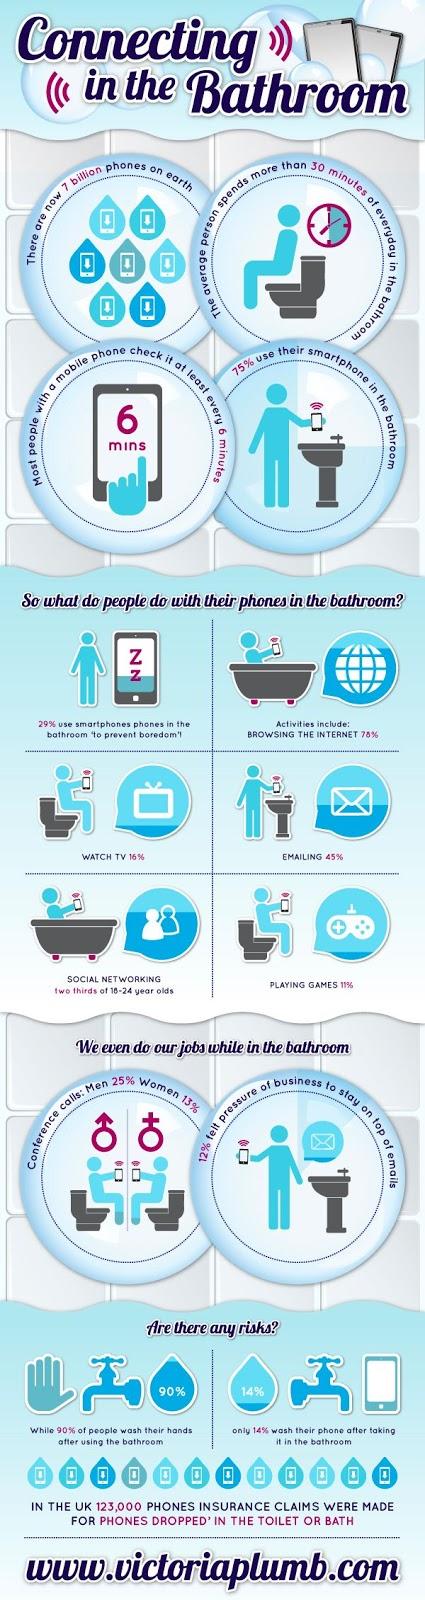 ¿Vas al baño con tu teléfono? La tendencia de conectarse en el baño